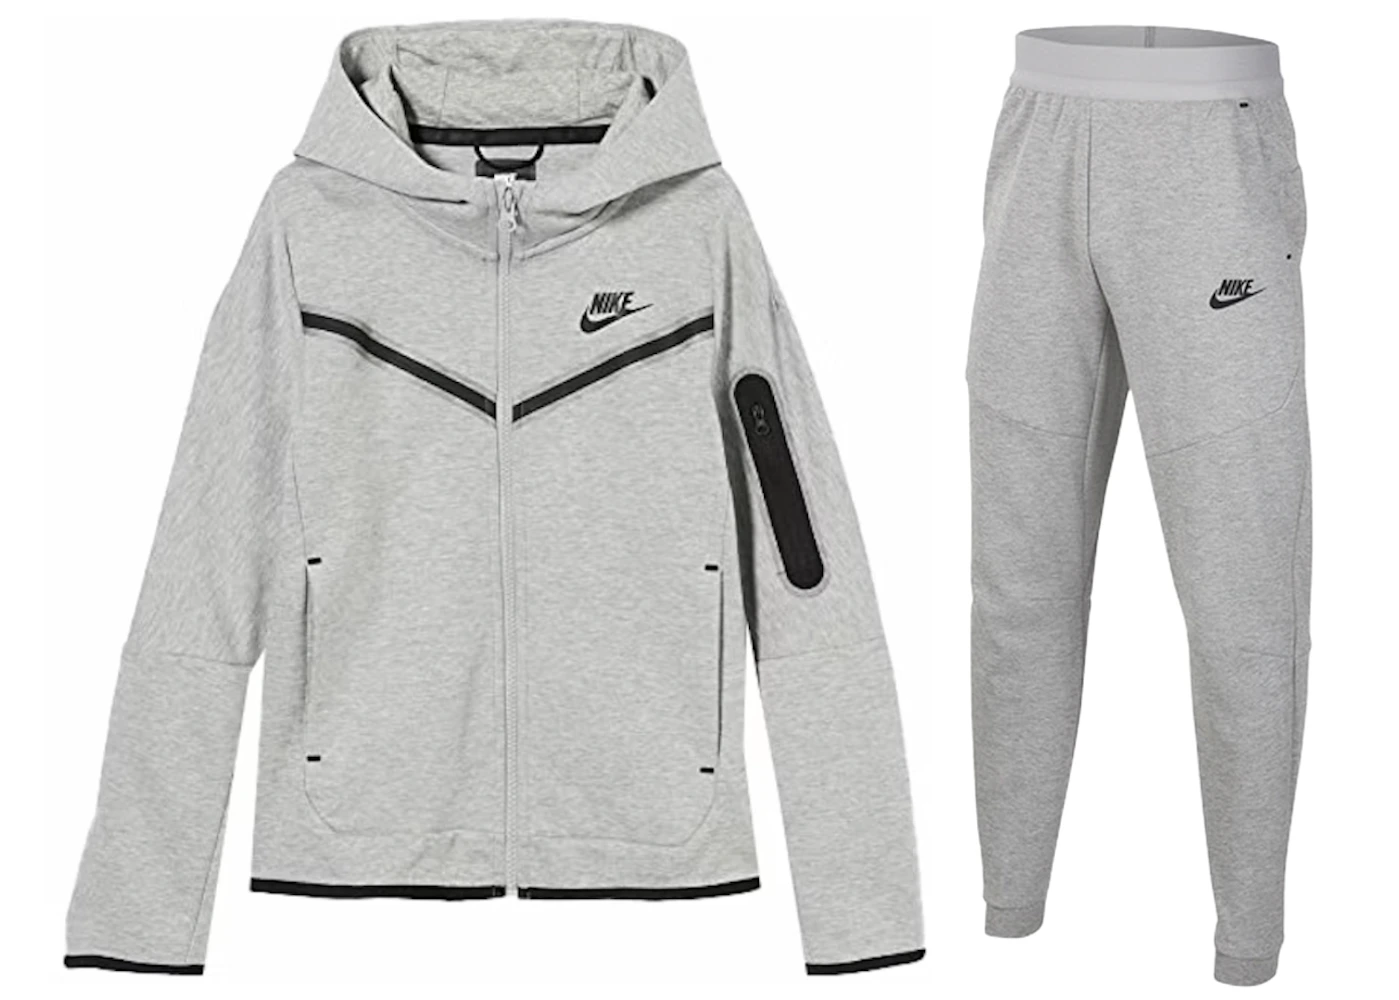 Survêtement Nike Tech Fleece gris chiné foncé/noir (pantalon + sweat à ...